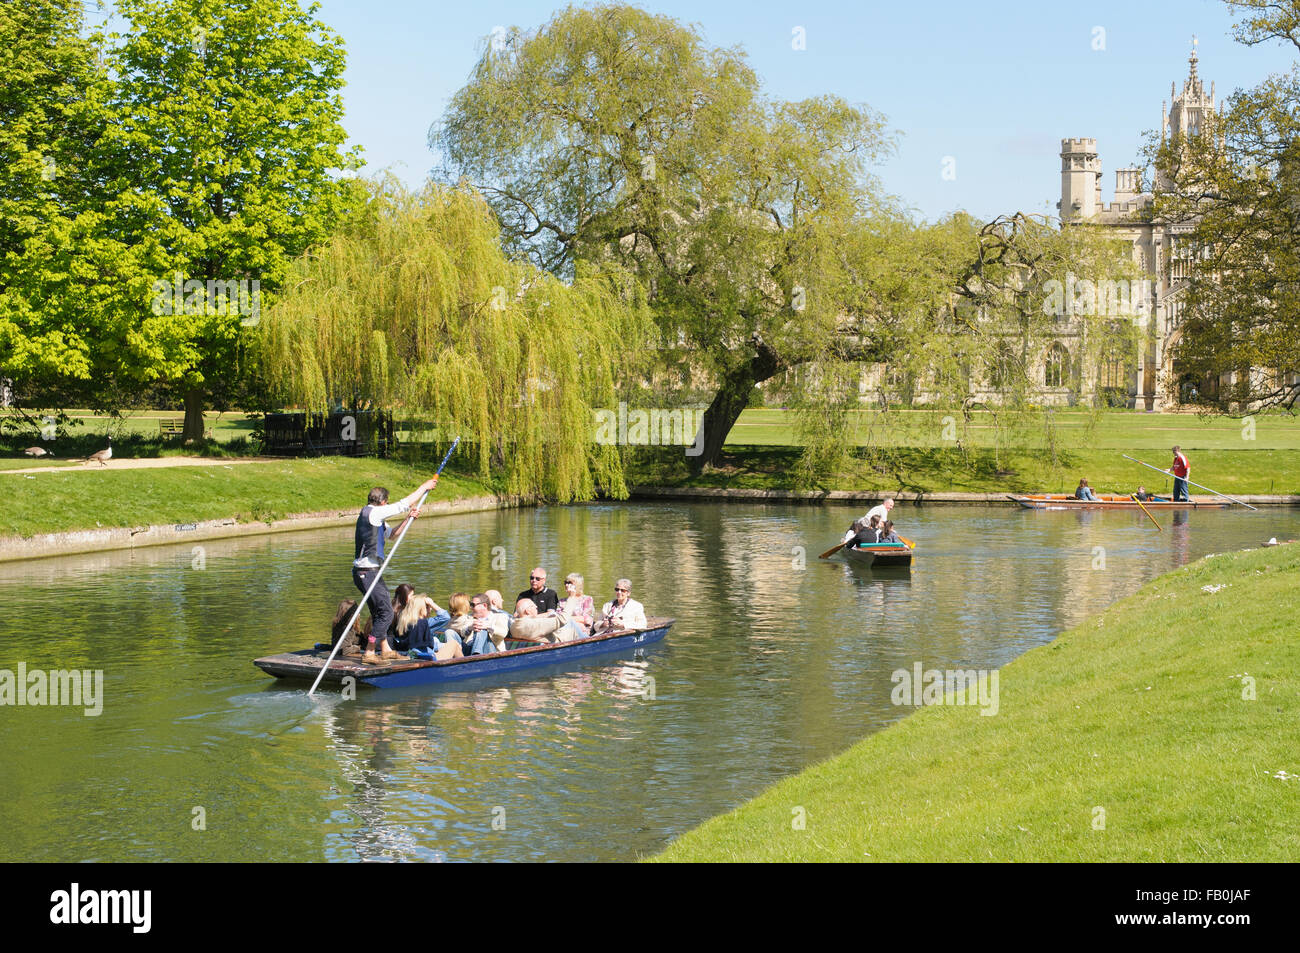 Punting sul fiume Cam dietro i collegi in una zona denominata i dorsi, Cambridge, Inghilterra, Regno Unito Foto Stock